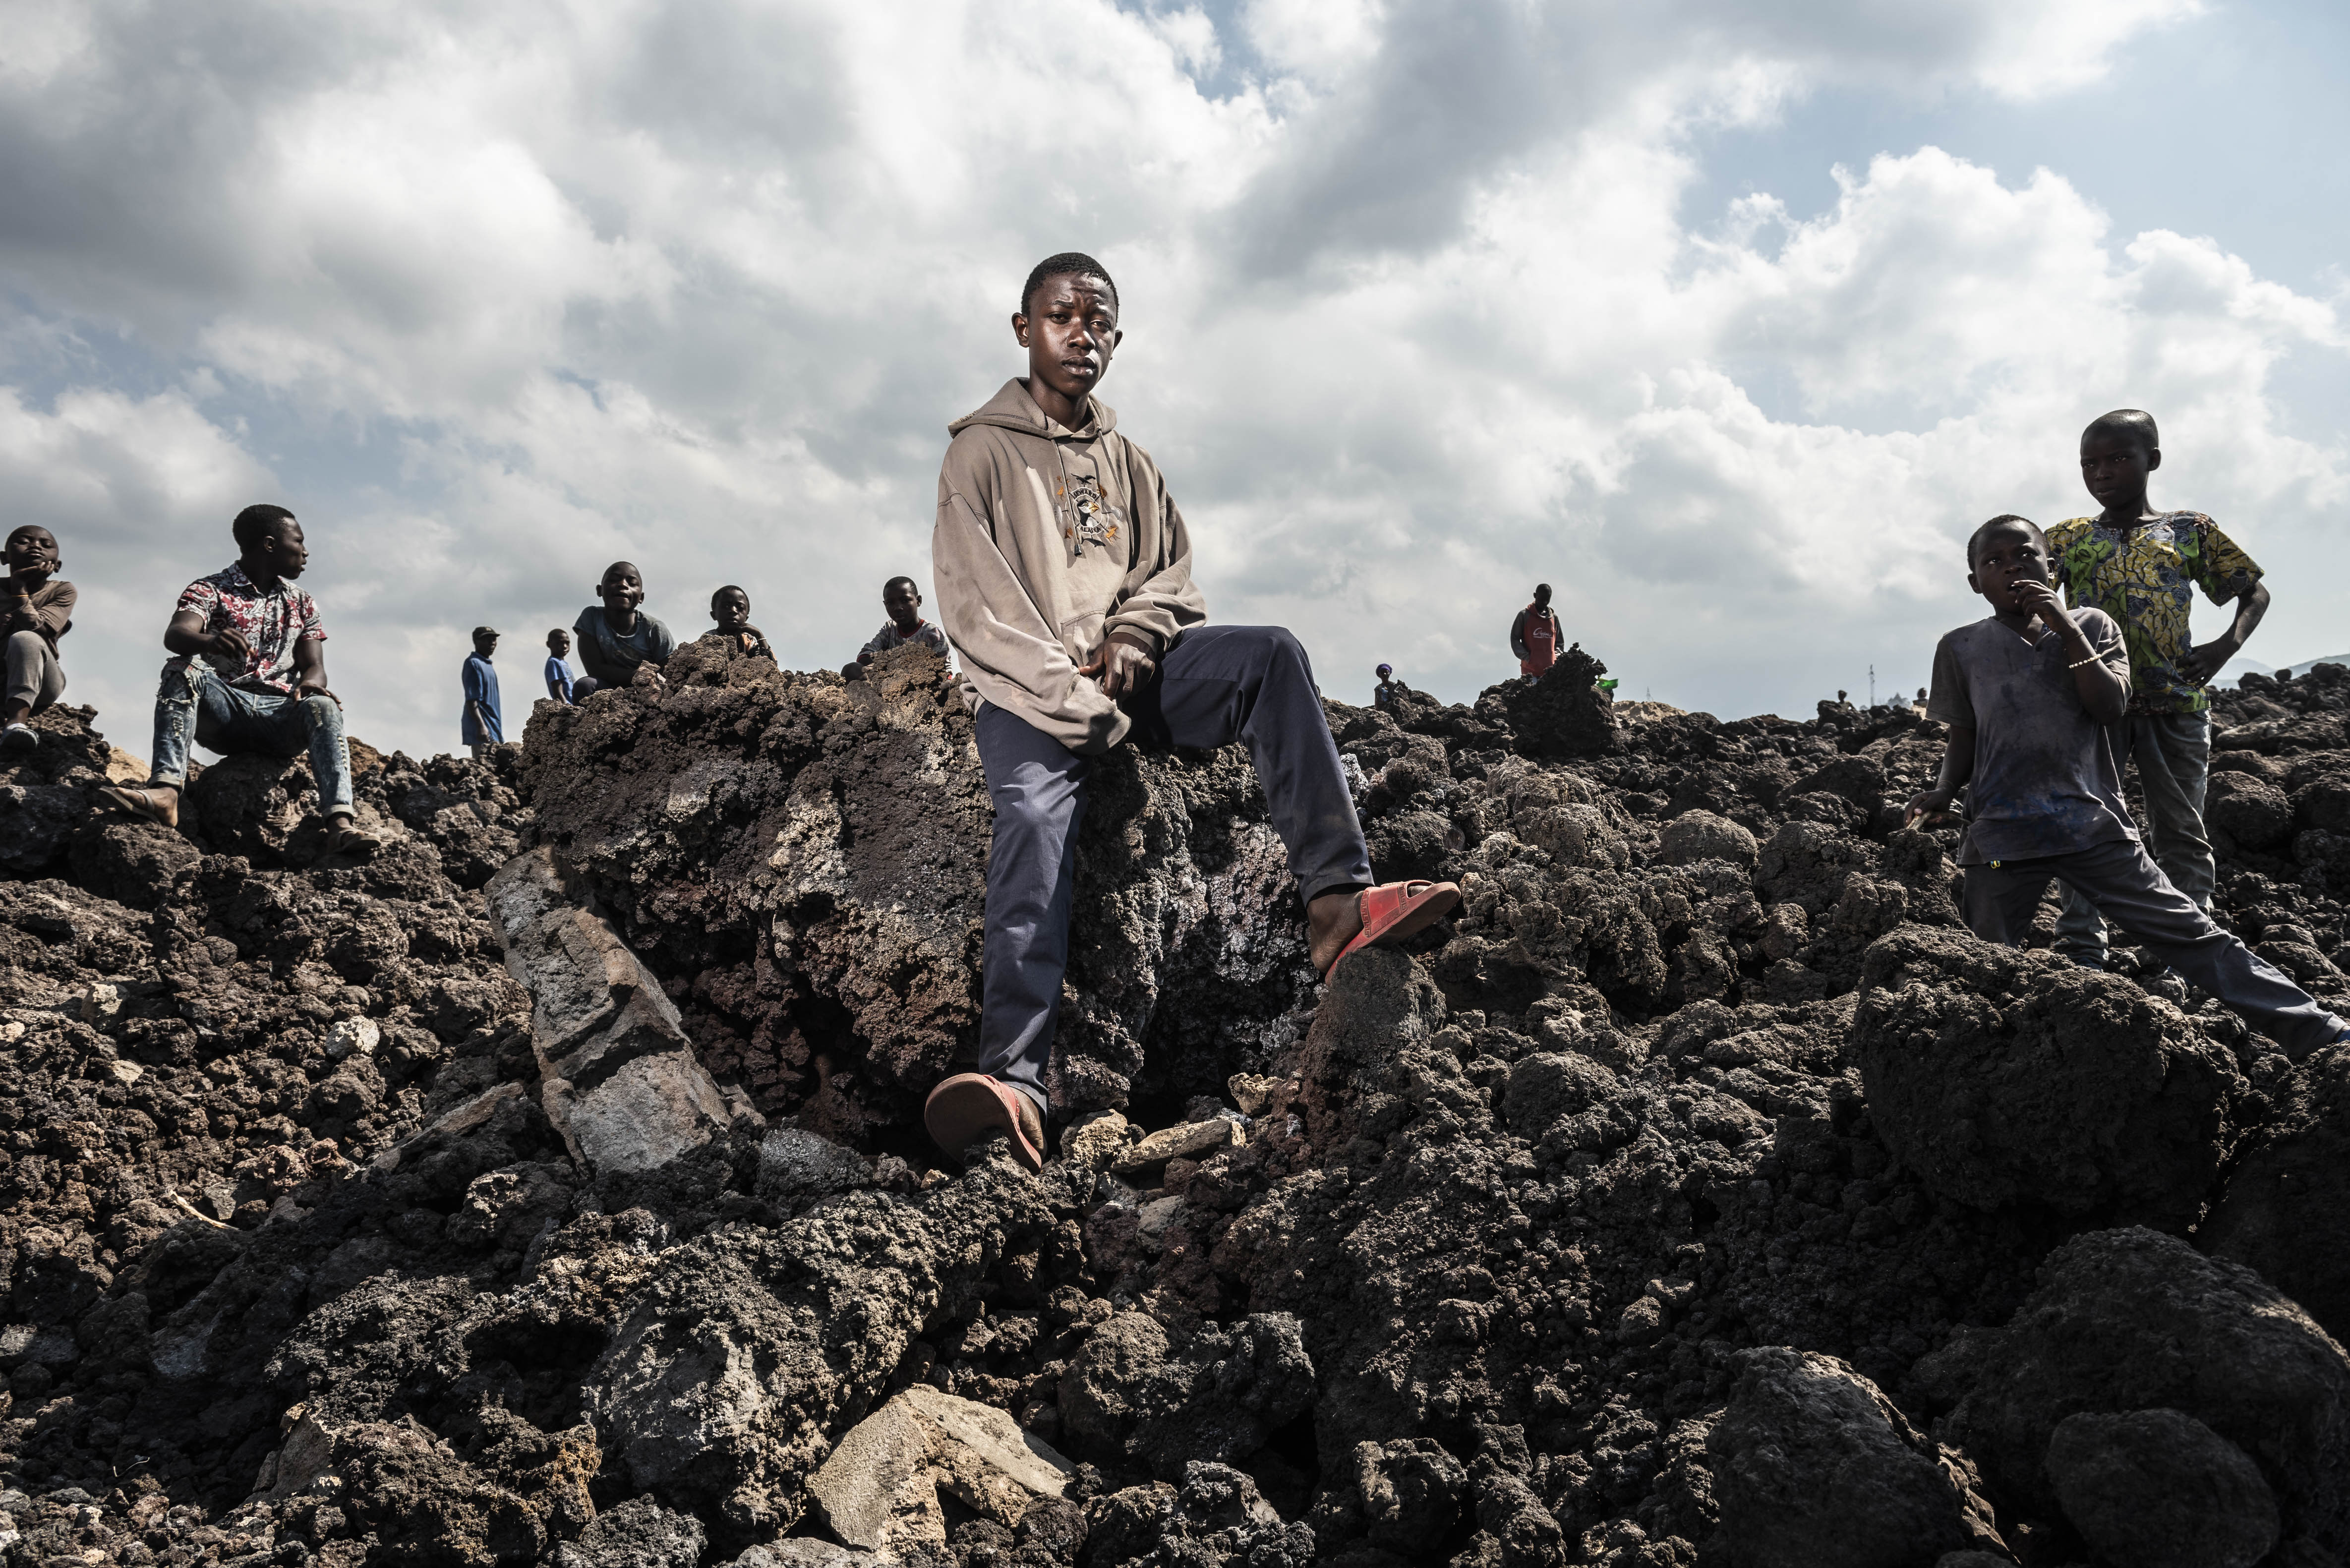 Prise en Charge des enfants sinistrés suite à l'éruption du volcan Nyiragongo à Goma, RDC -3